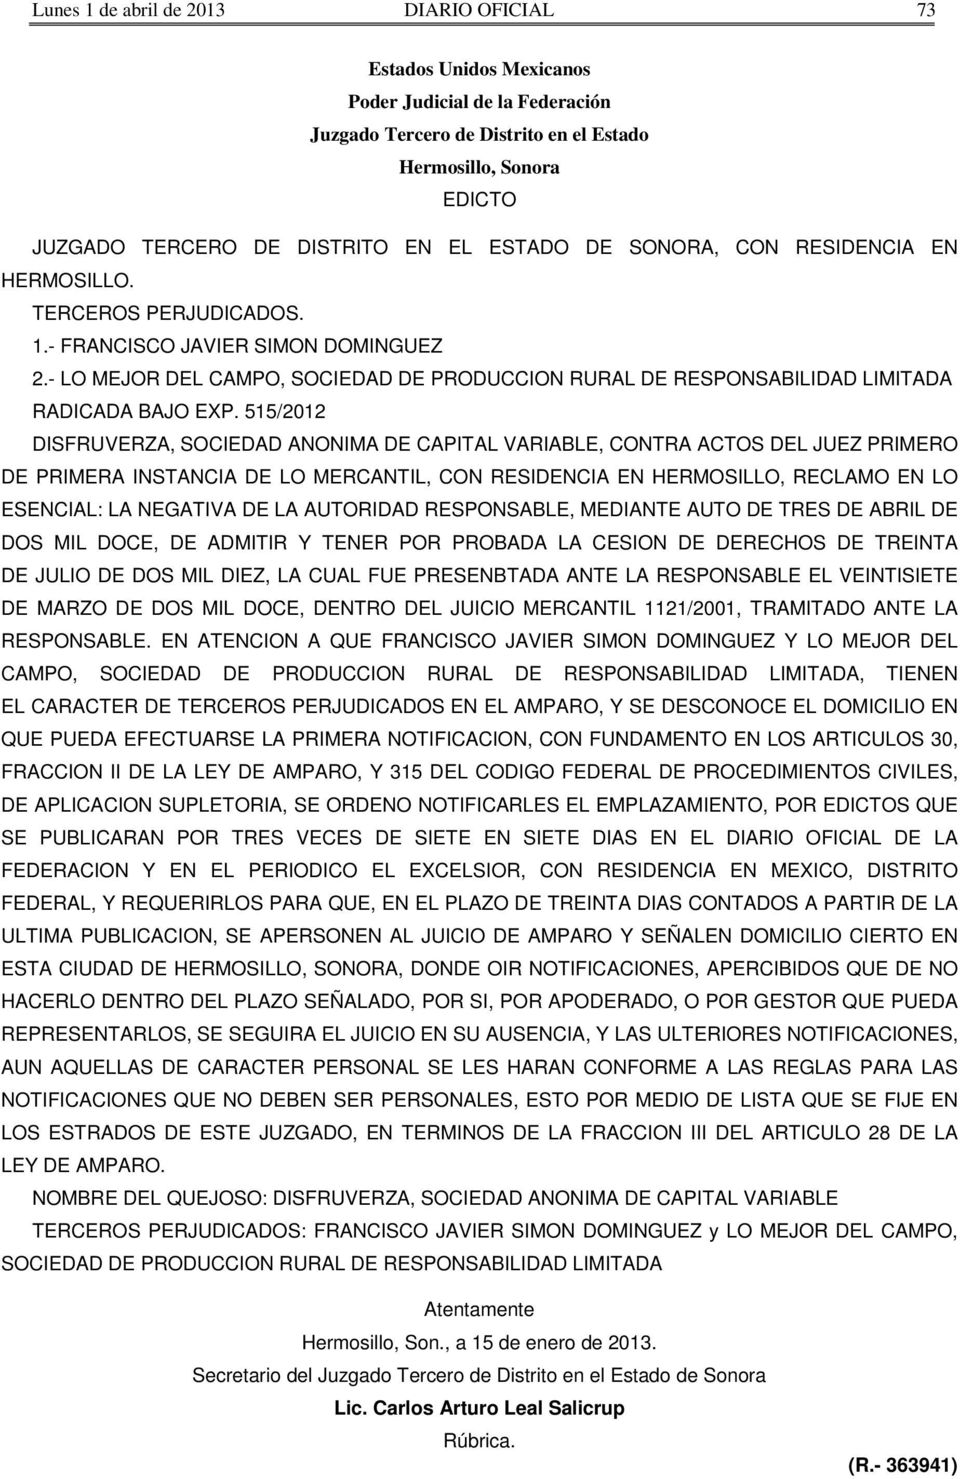 515/2012 DISFRUVERZA, SOCIEDAD ANONIMA DE CAPITAL VARIABLE, CONTRA ACTOS DEL JUEZ PRIMERO DE PRIMERA INSTANCIA DE LO MERCANTIL, CON RESIDENCIA EN HERMOSILLO, RECLAMO EN LO ESENCIAL: LA NEGATIVA DE LA